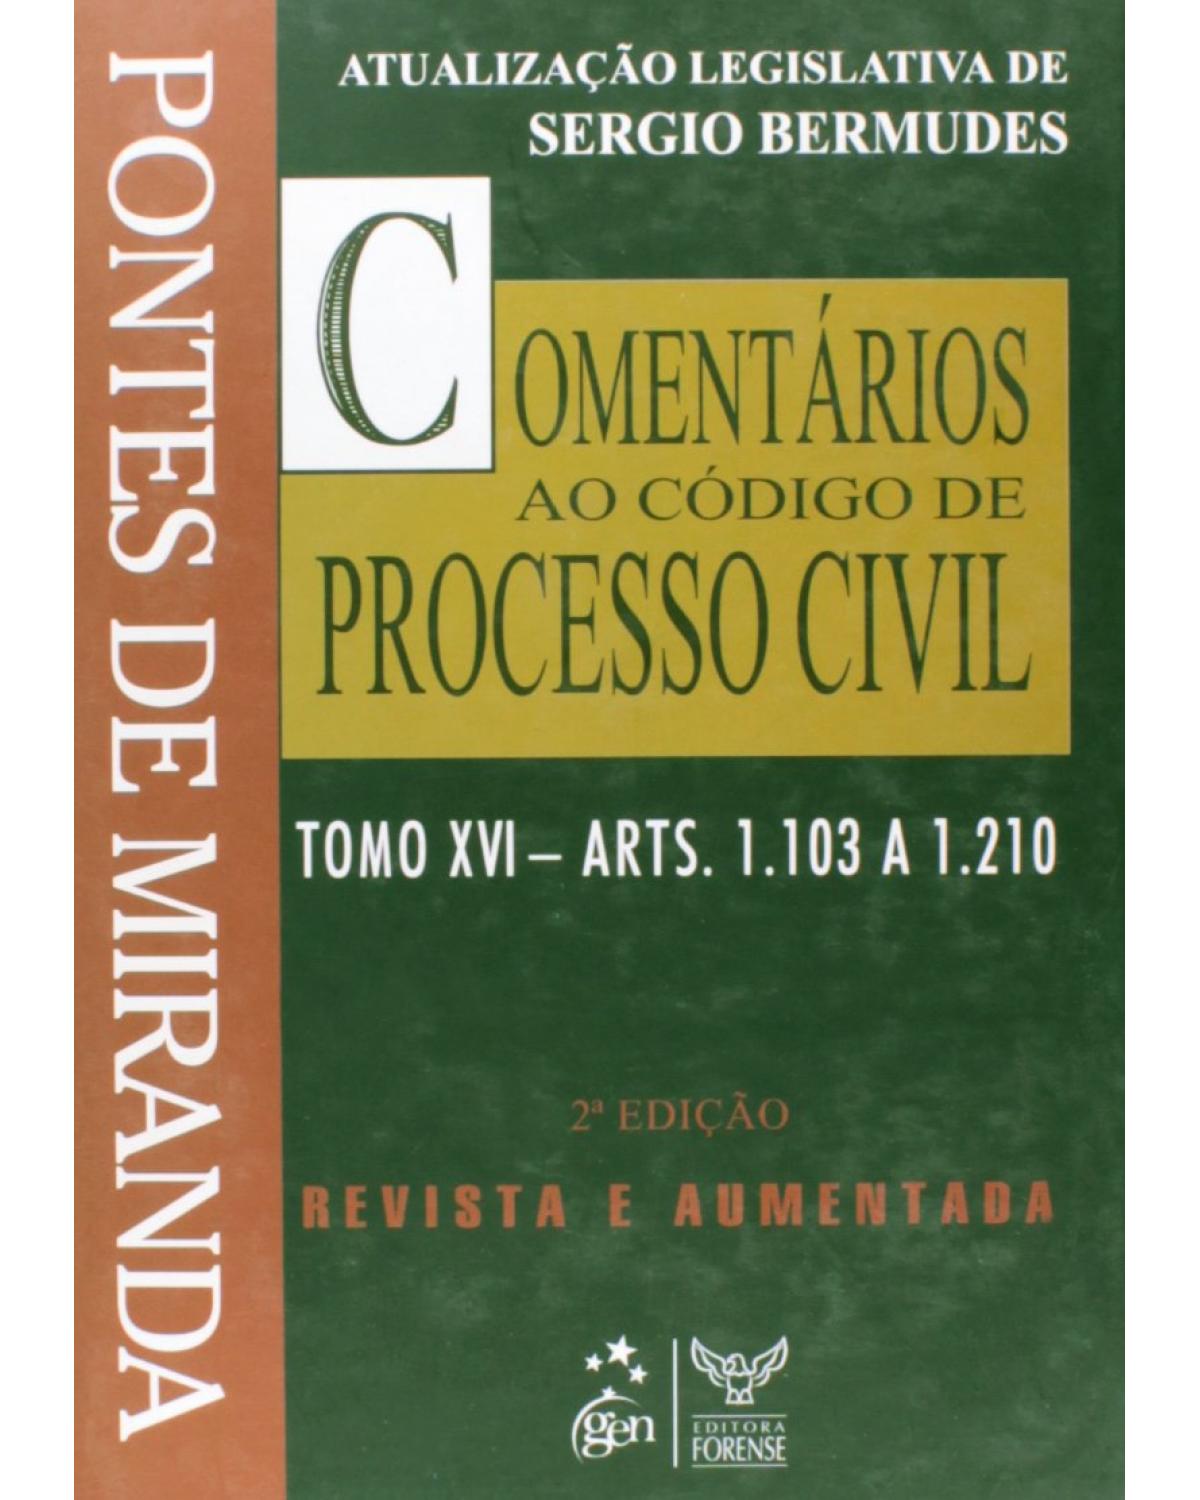 Comentários ao código de processo civil - Tomo 16 - Arts. 1.103 a 1.210 - 2ª Edição | 2008